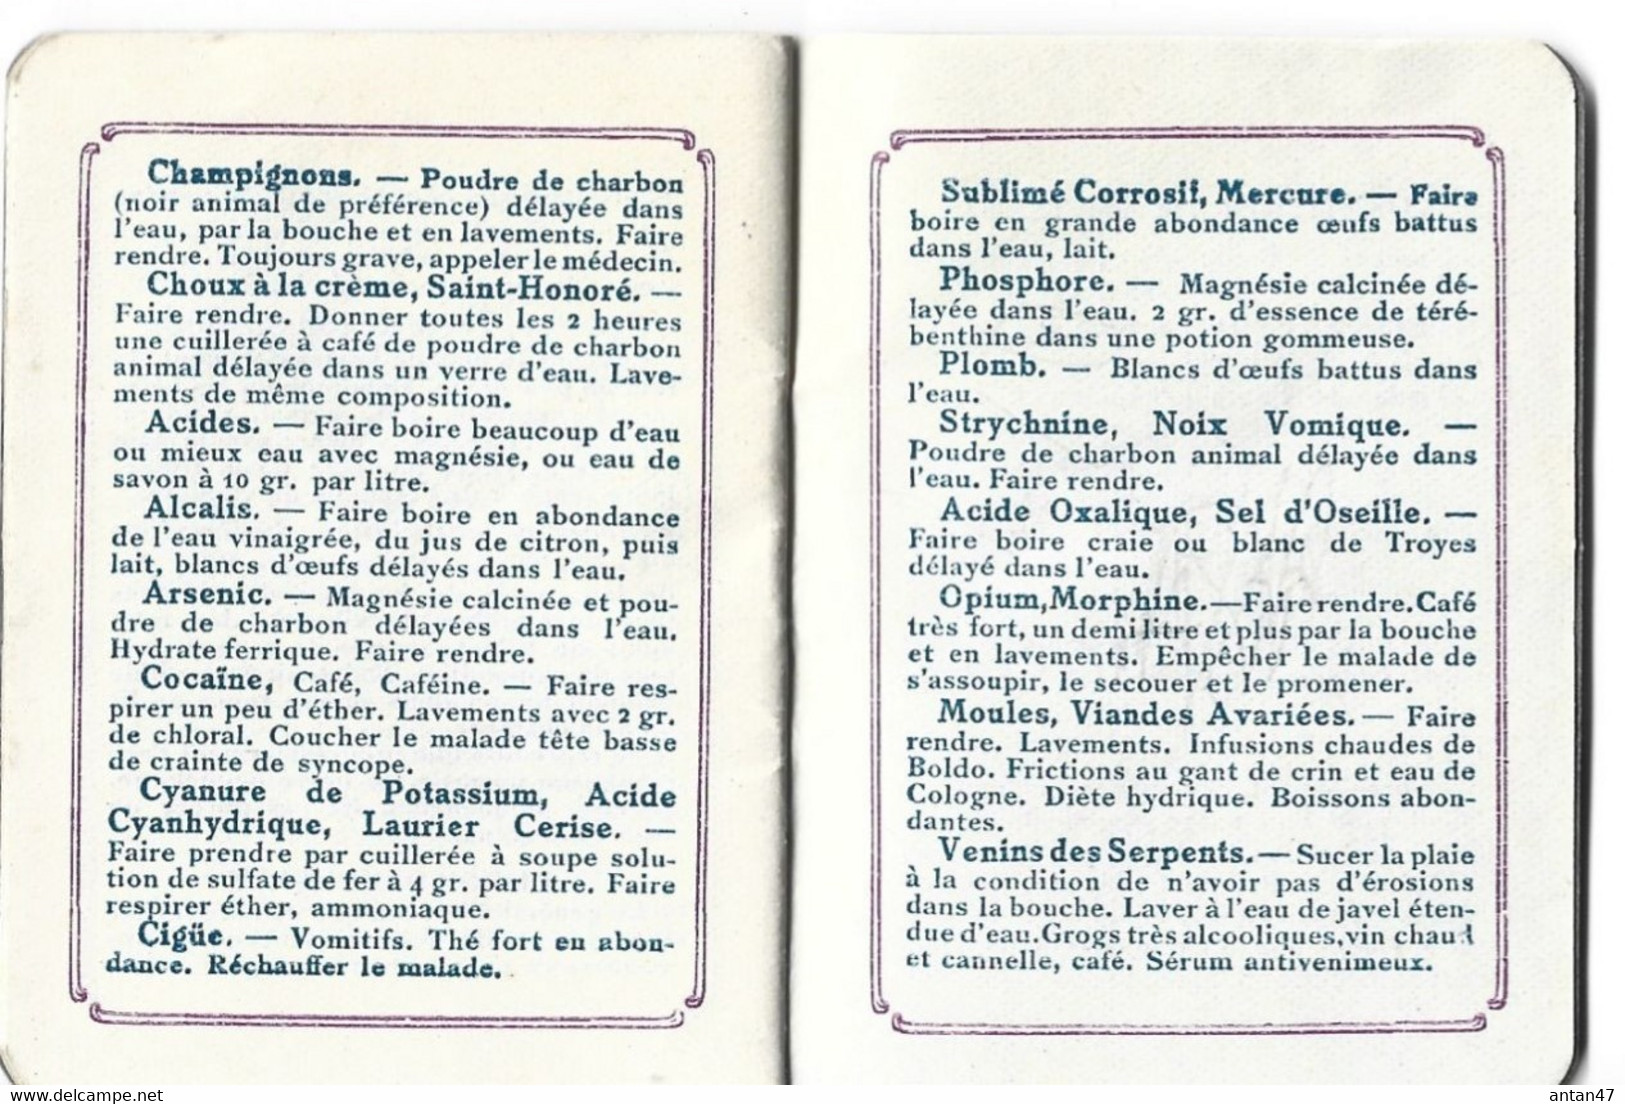 Agenda-Calendrier 1922 (7.5 x6 cm, 16 pages) / Poids, taille, dentition, pesées, hygiène enfants / Pub Sirop DESCHIENS